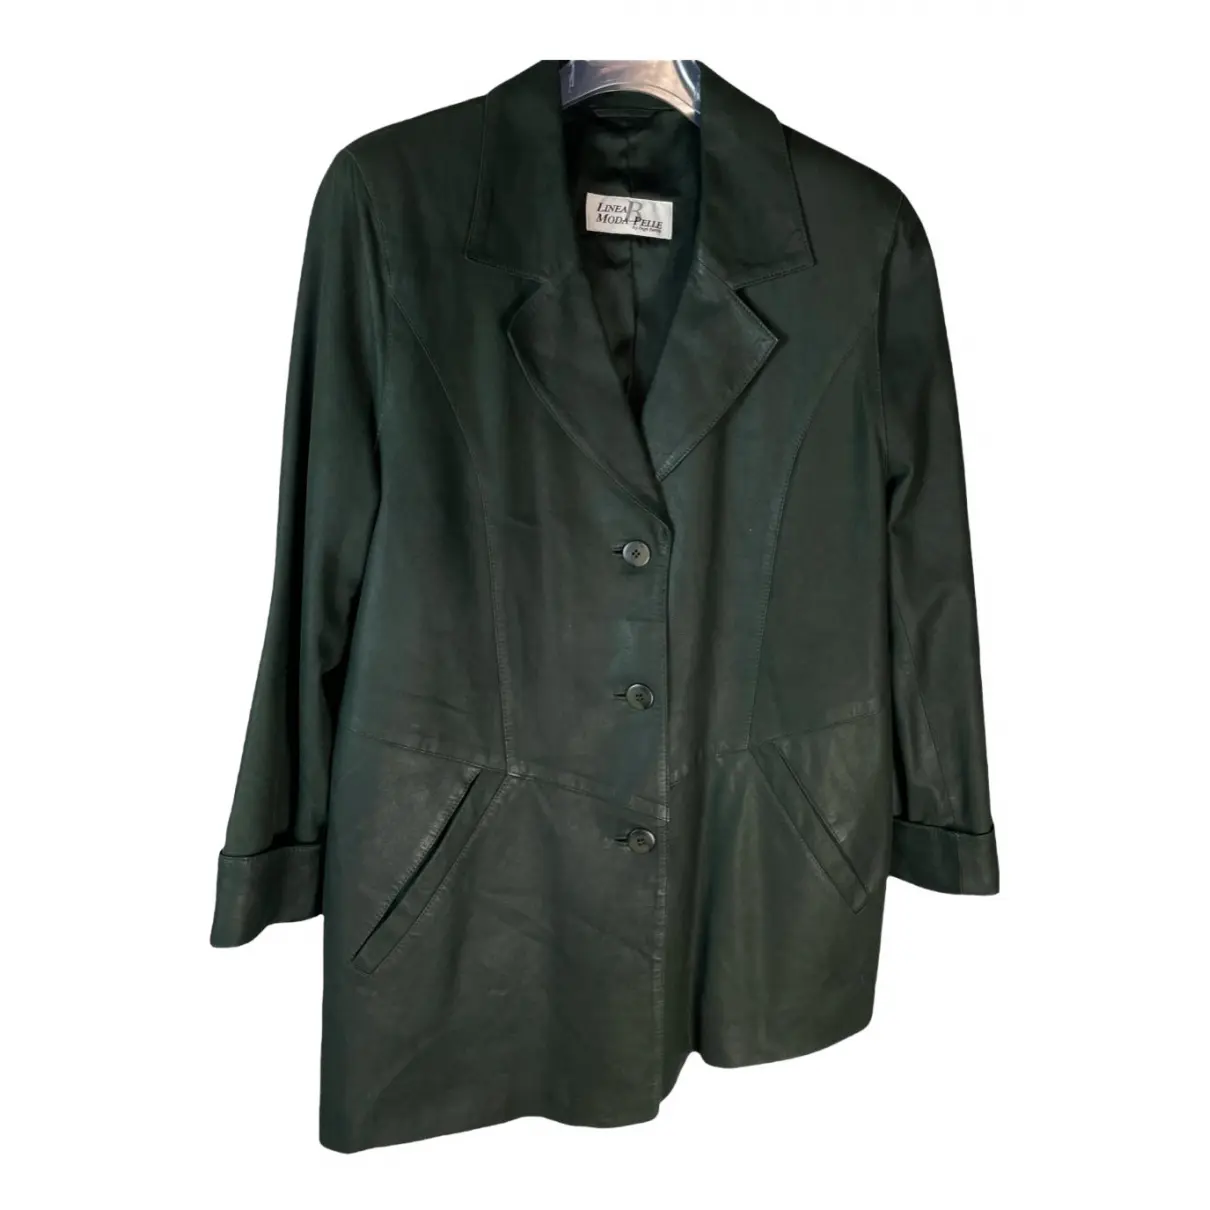 Leather jacket Linea Pelle